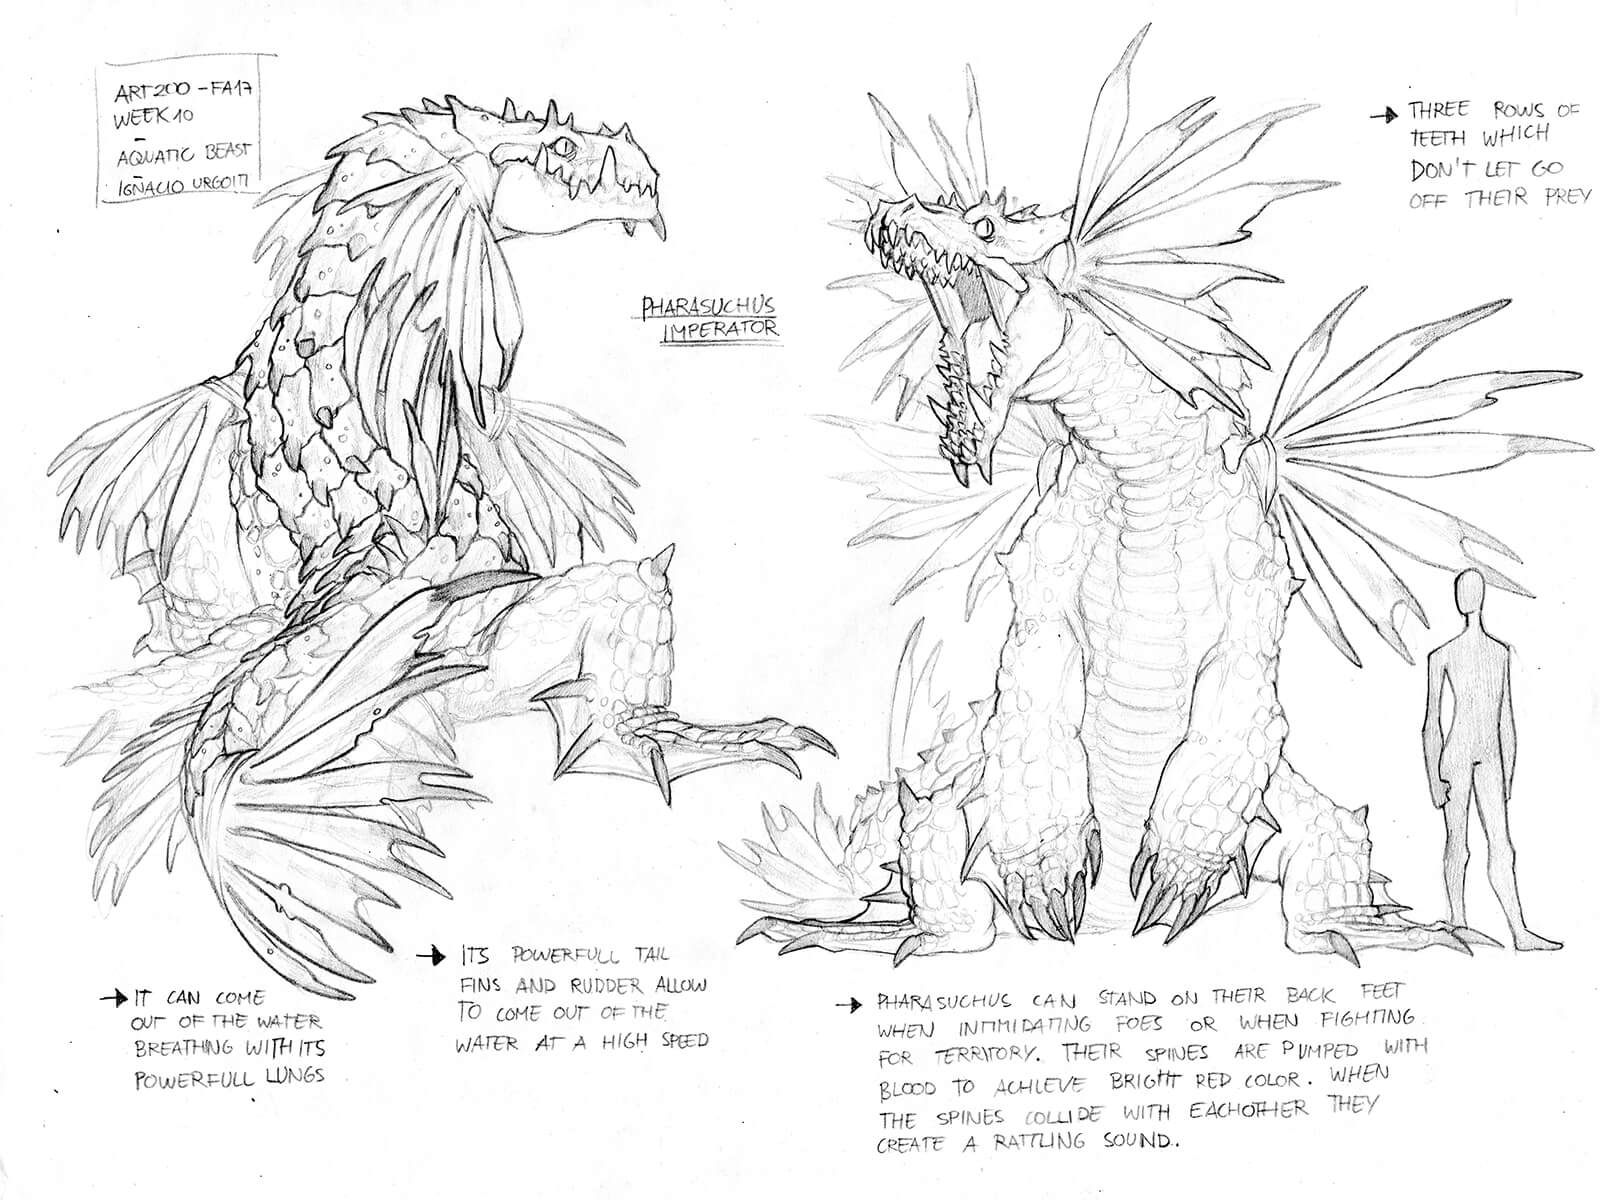 Bocetos conceptuales en blanco y negro de una criatura parecida a un dragón volando, de pie y comiendo un animal.